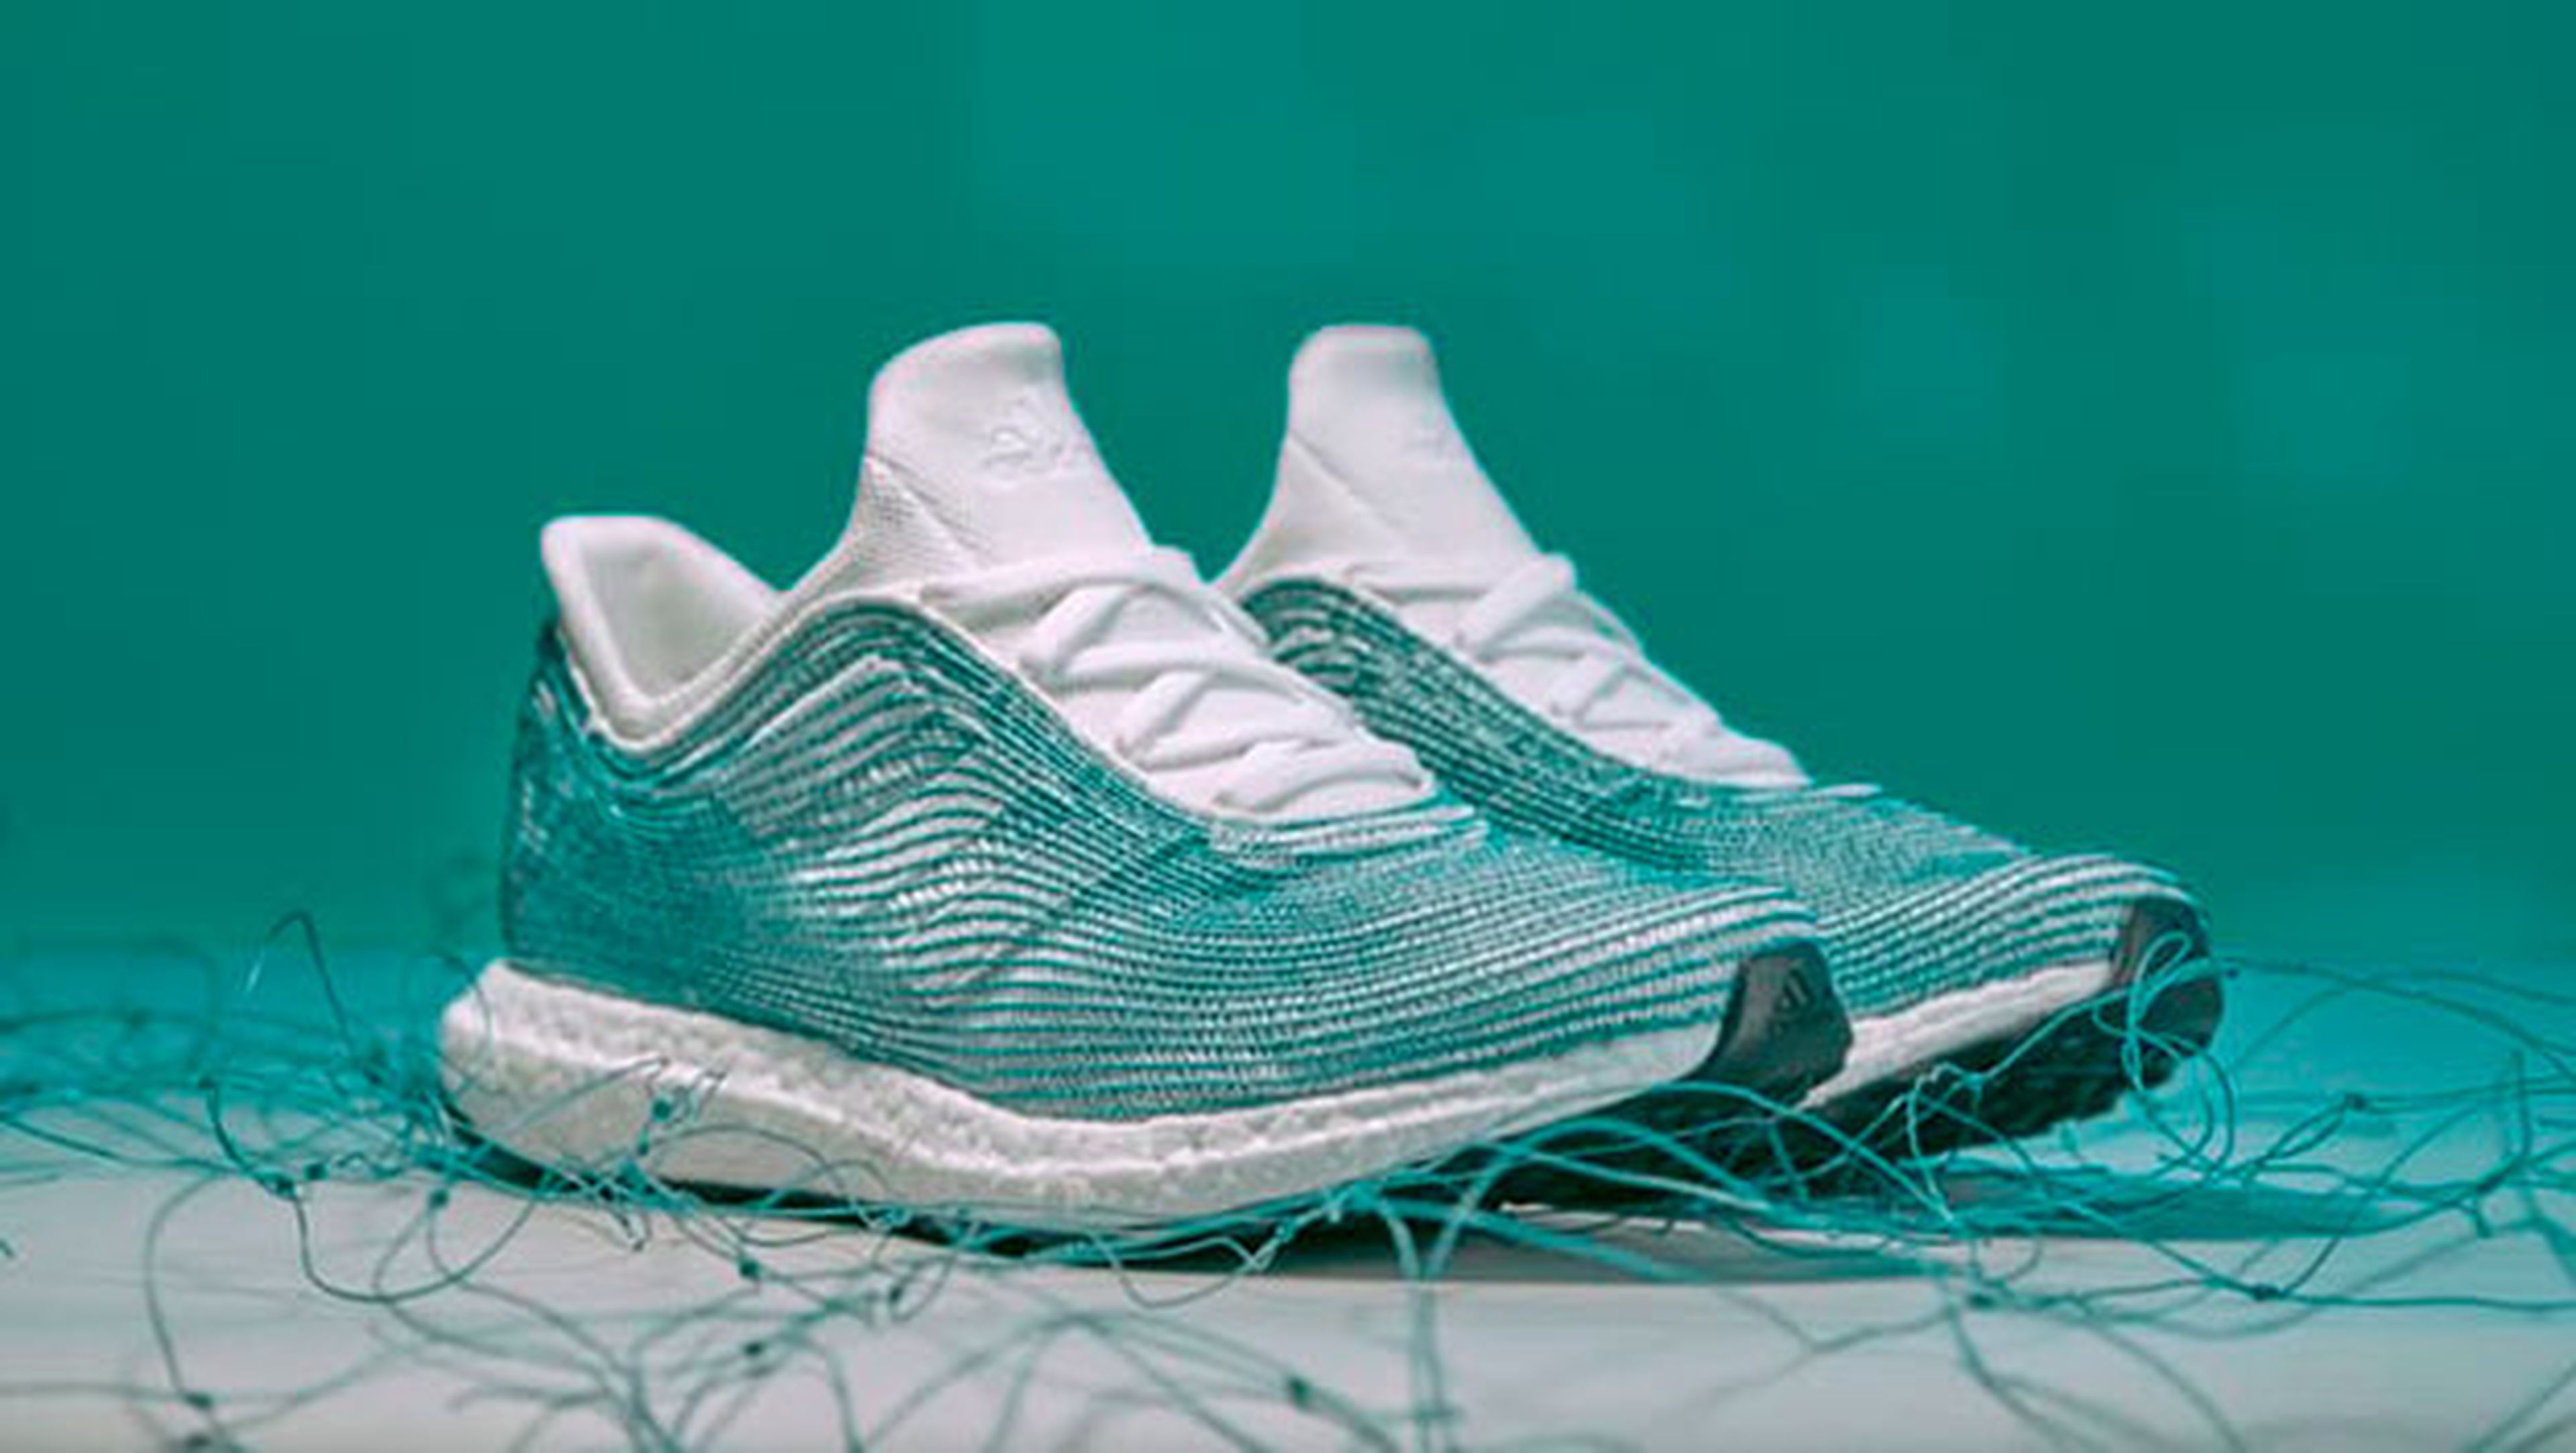 Adidas fabrica unas zapatillas con basura del océano | Computer Hoy